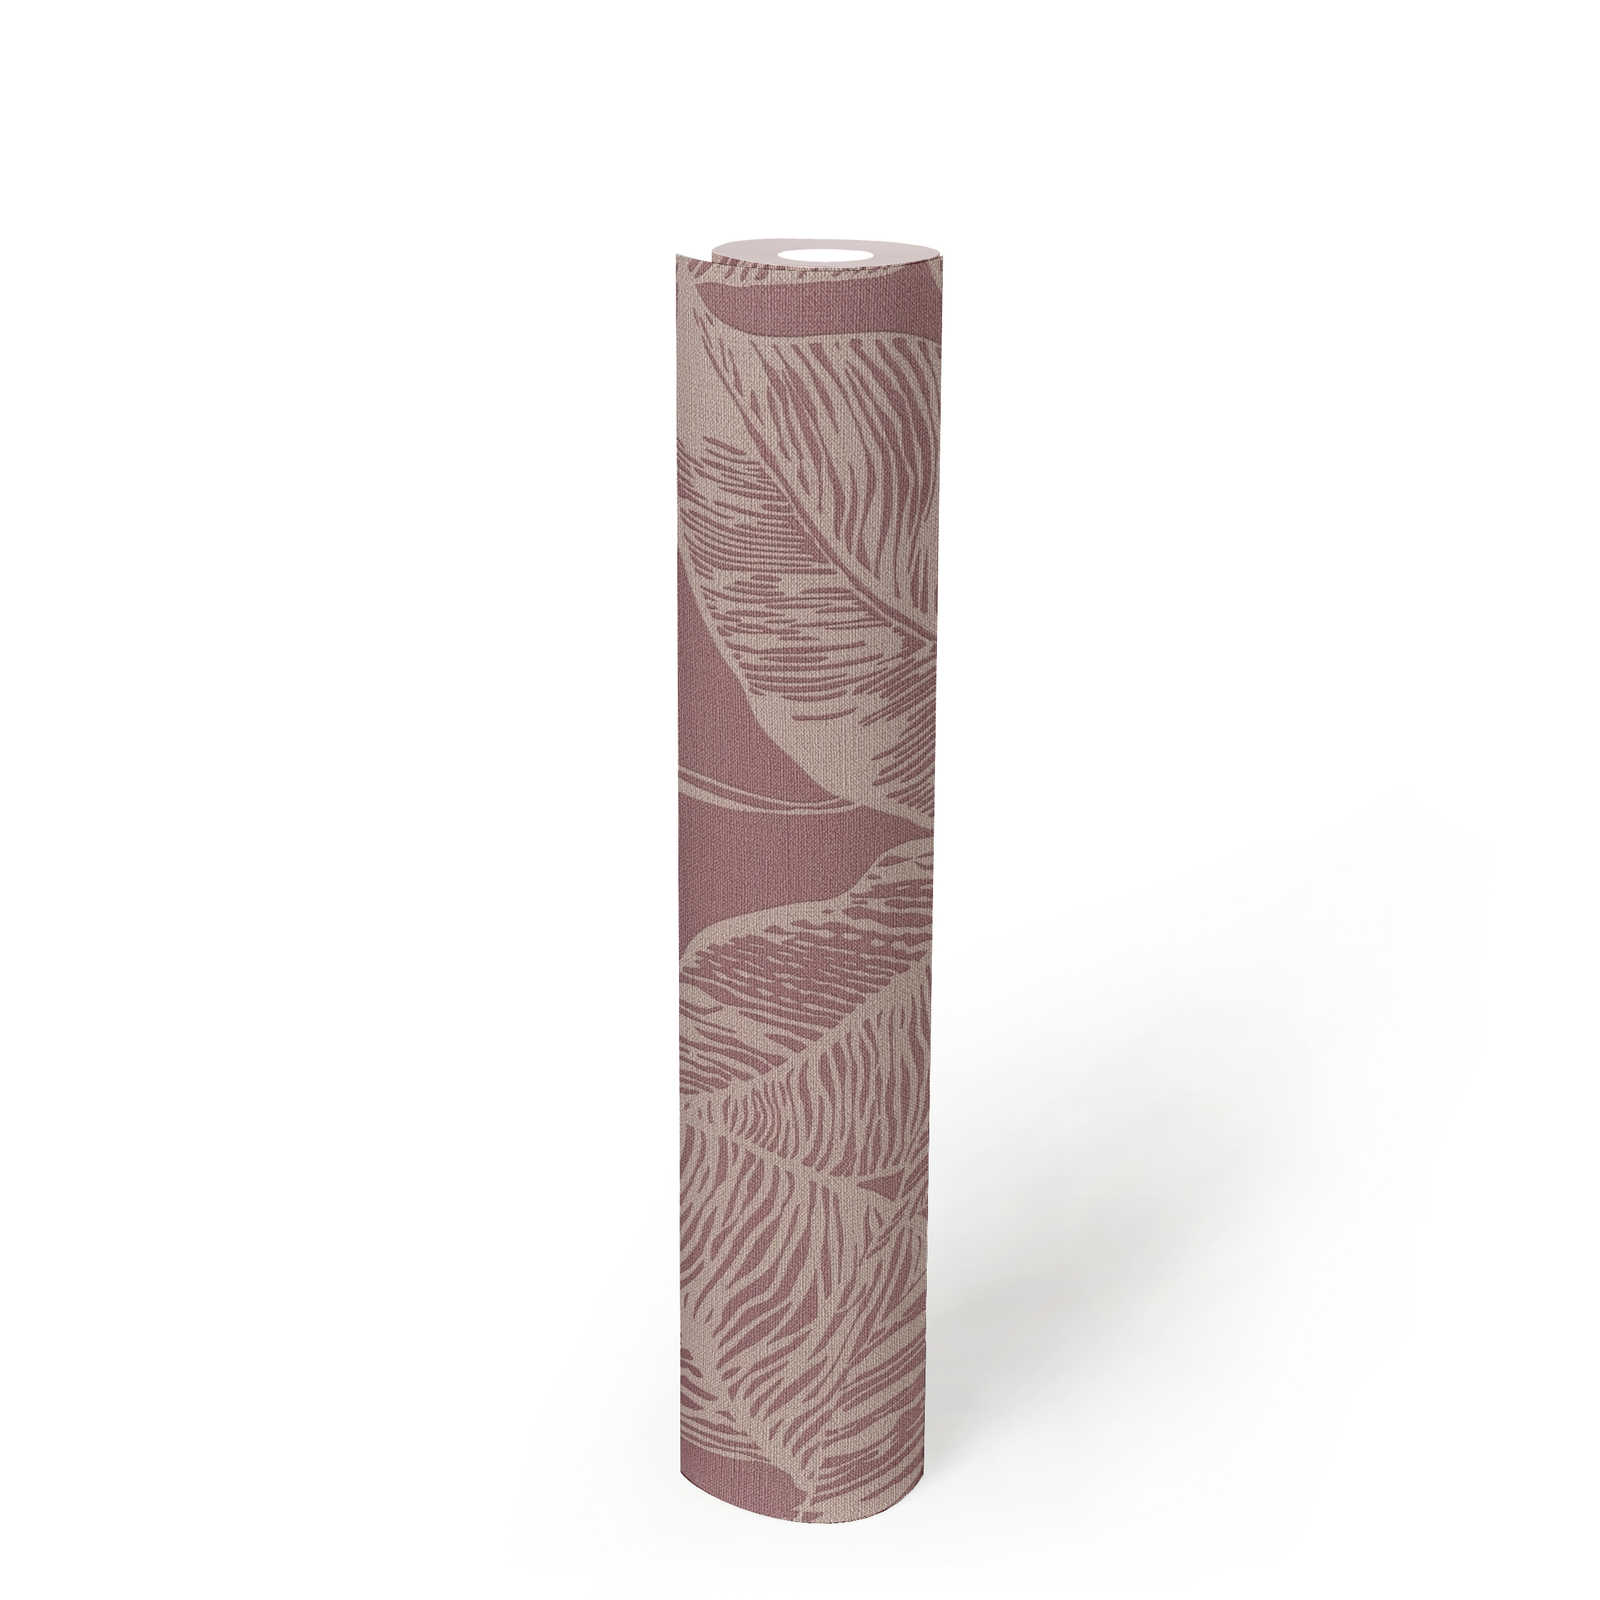             PVC-vrij vliesbehang met bladmotief - roze, crème
        